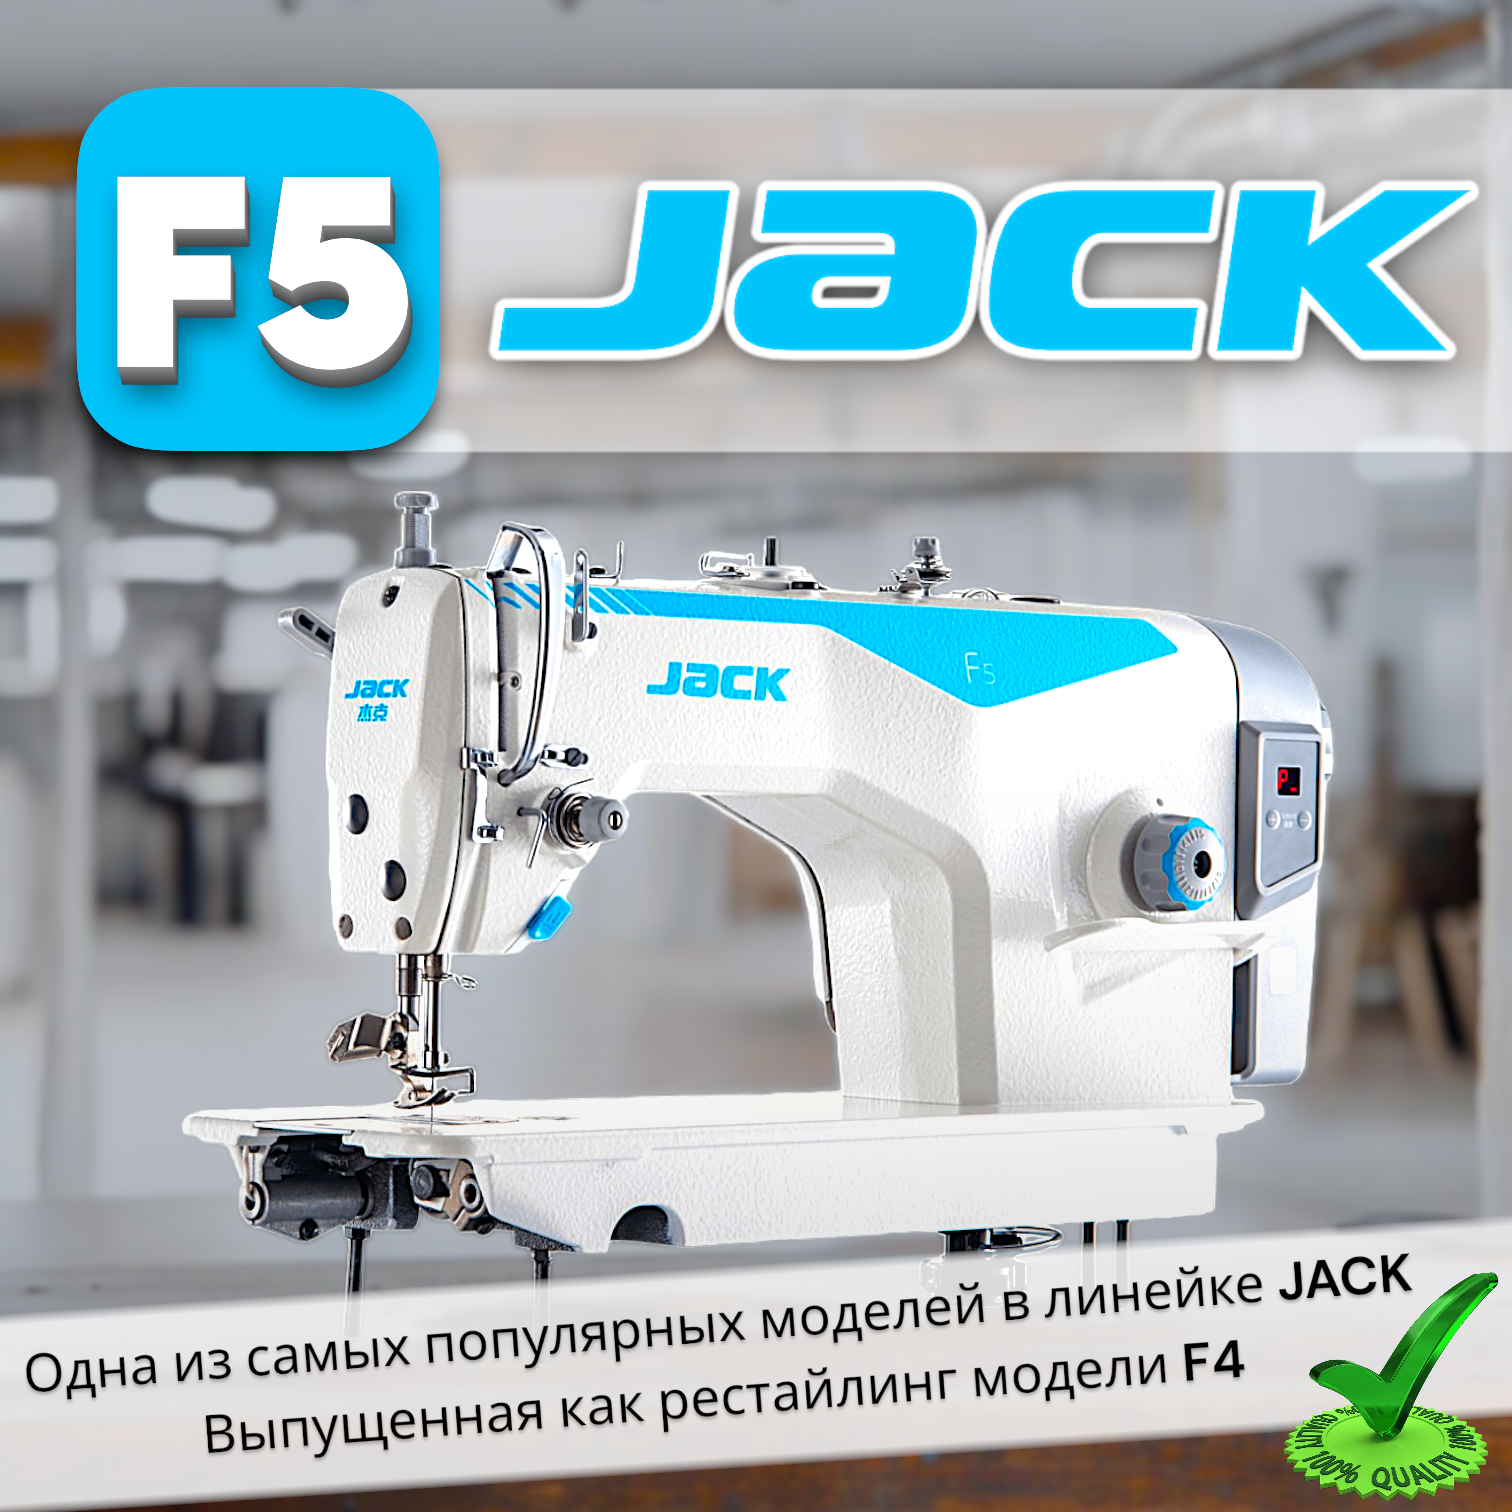 JACK F5 высокоскоростная одноигольная промышленная швейная машина/ для легких и средних тканей